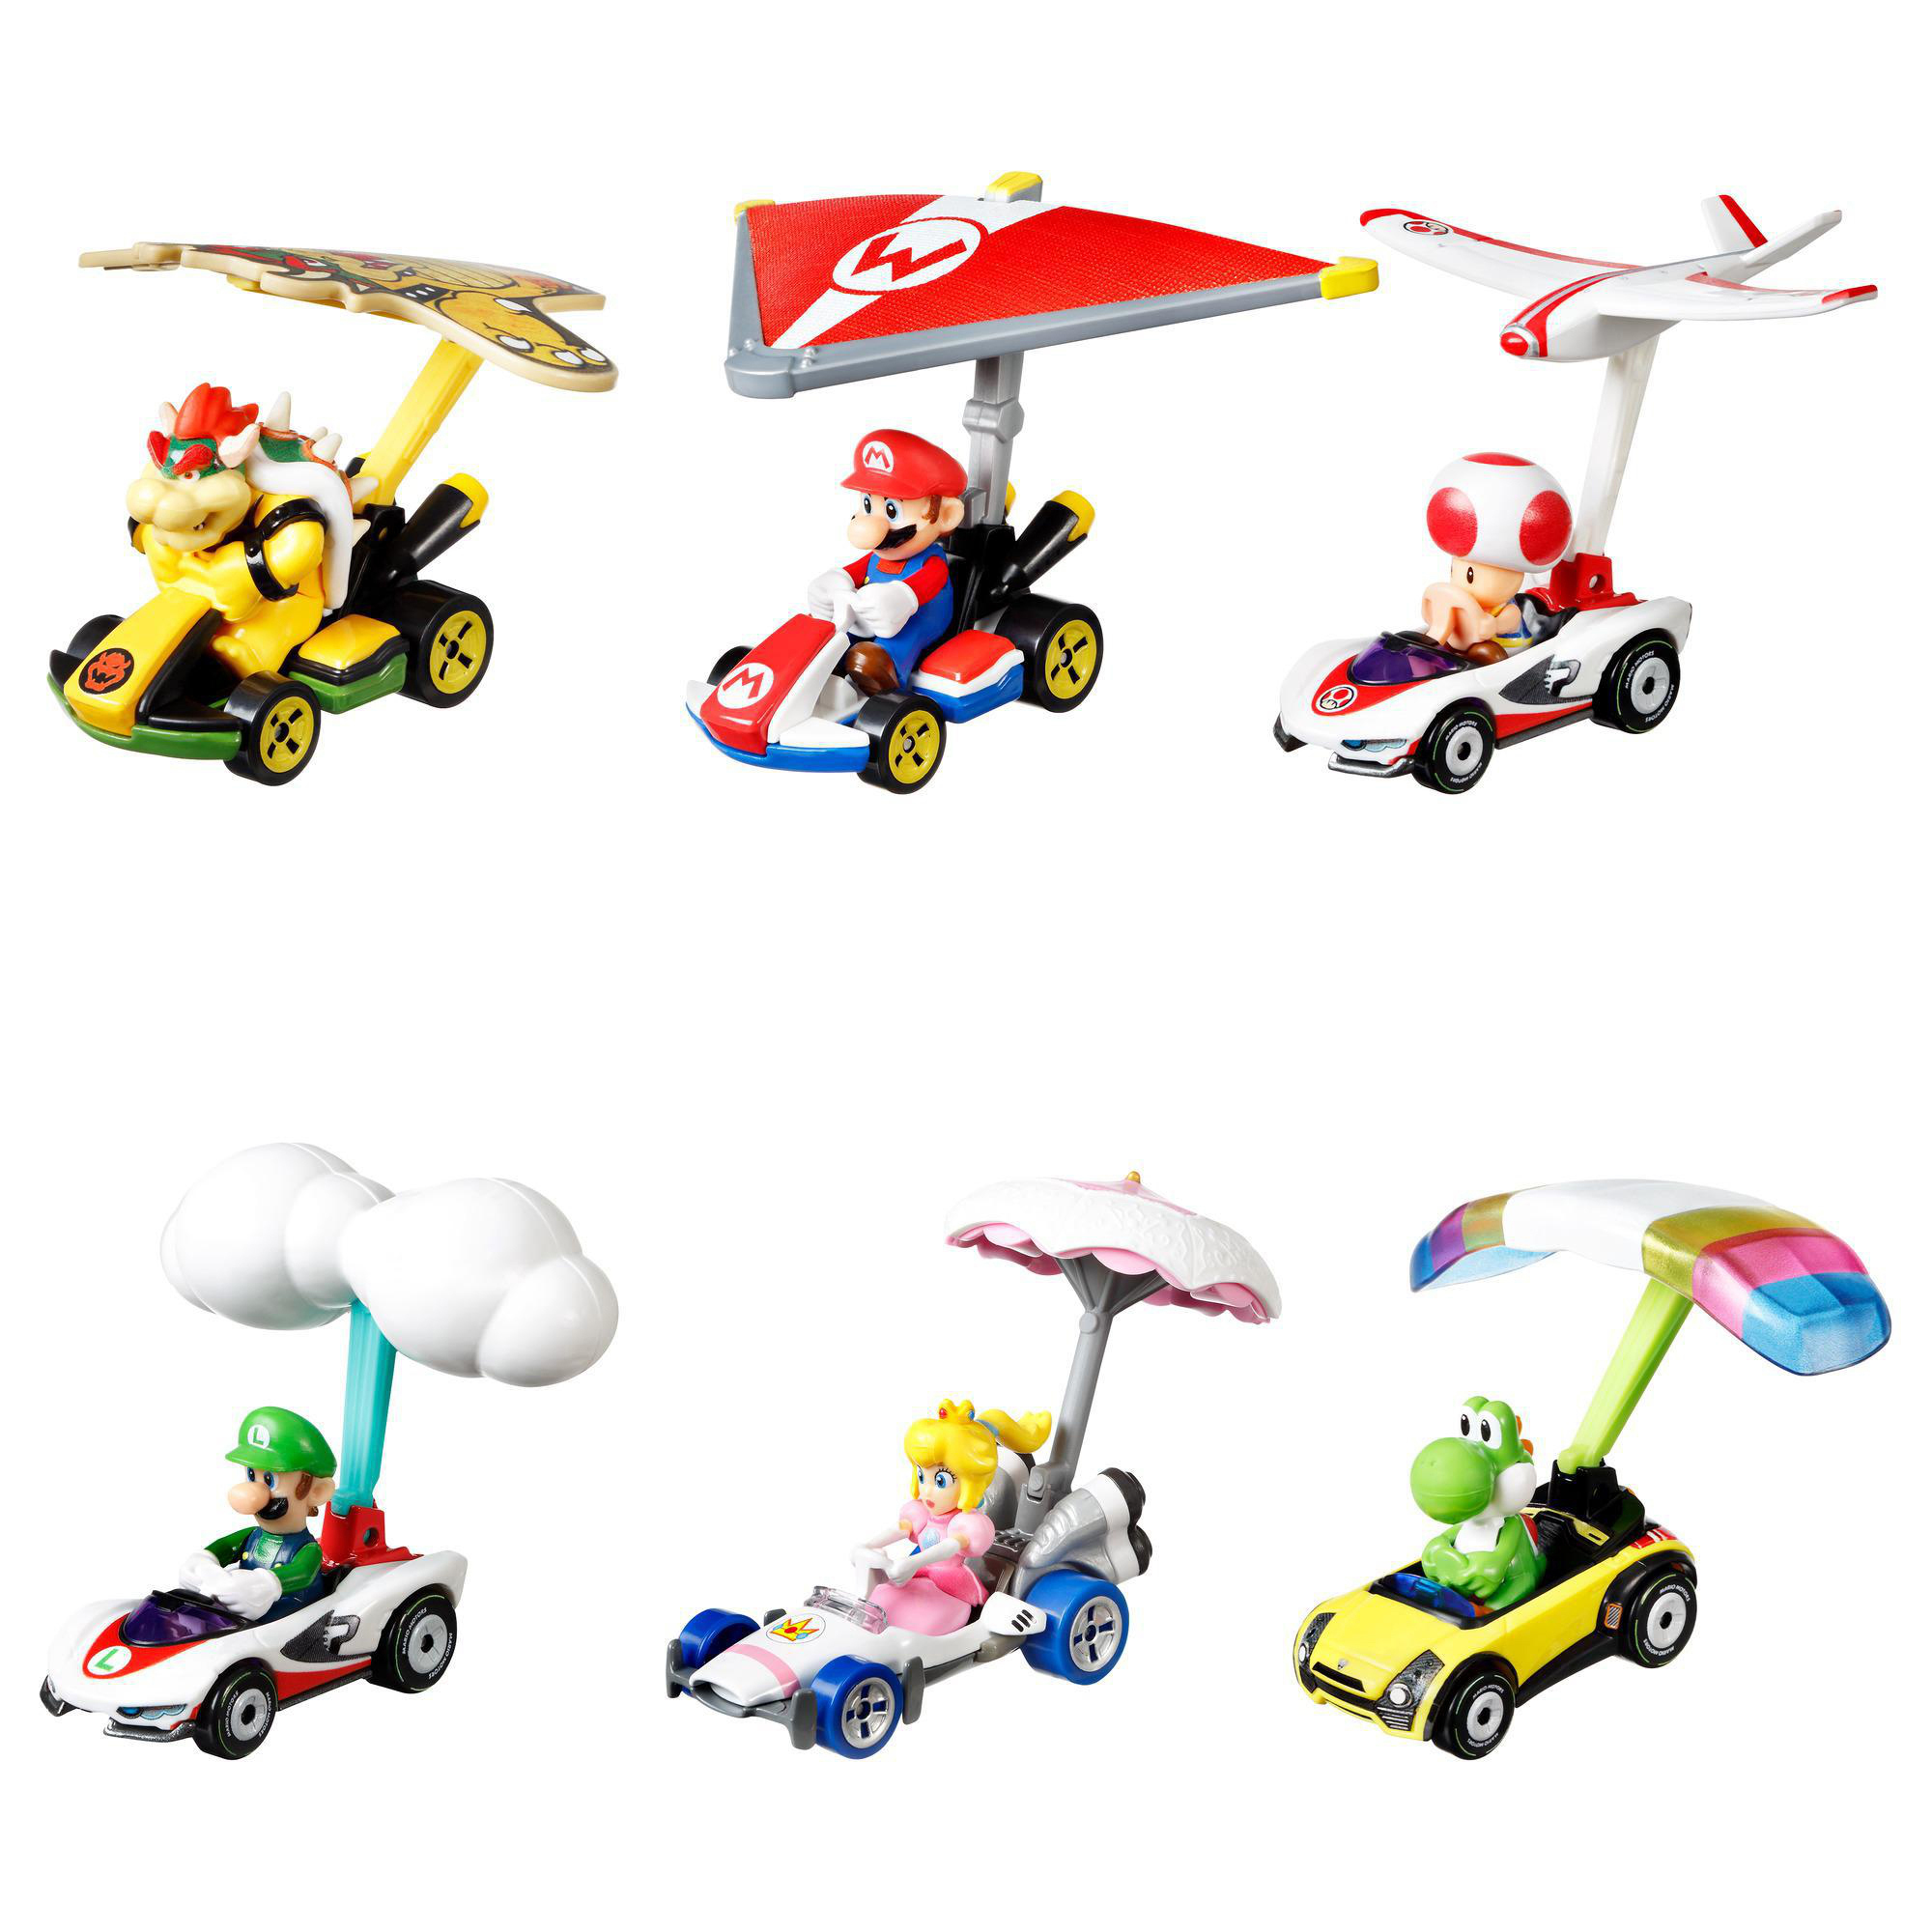 HOT WHEELS Mario für Kinder Die-Cast nicht Charakter 3 Farbauswahl Kart ab Geschenk Fahrzeug möglich Glider, Spielzeugauto Jahren mit